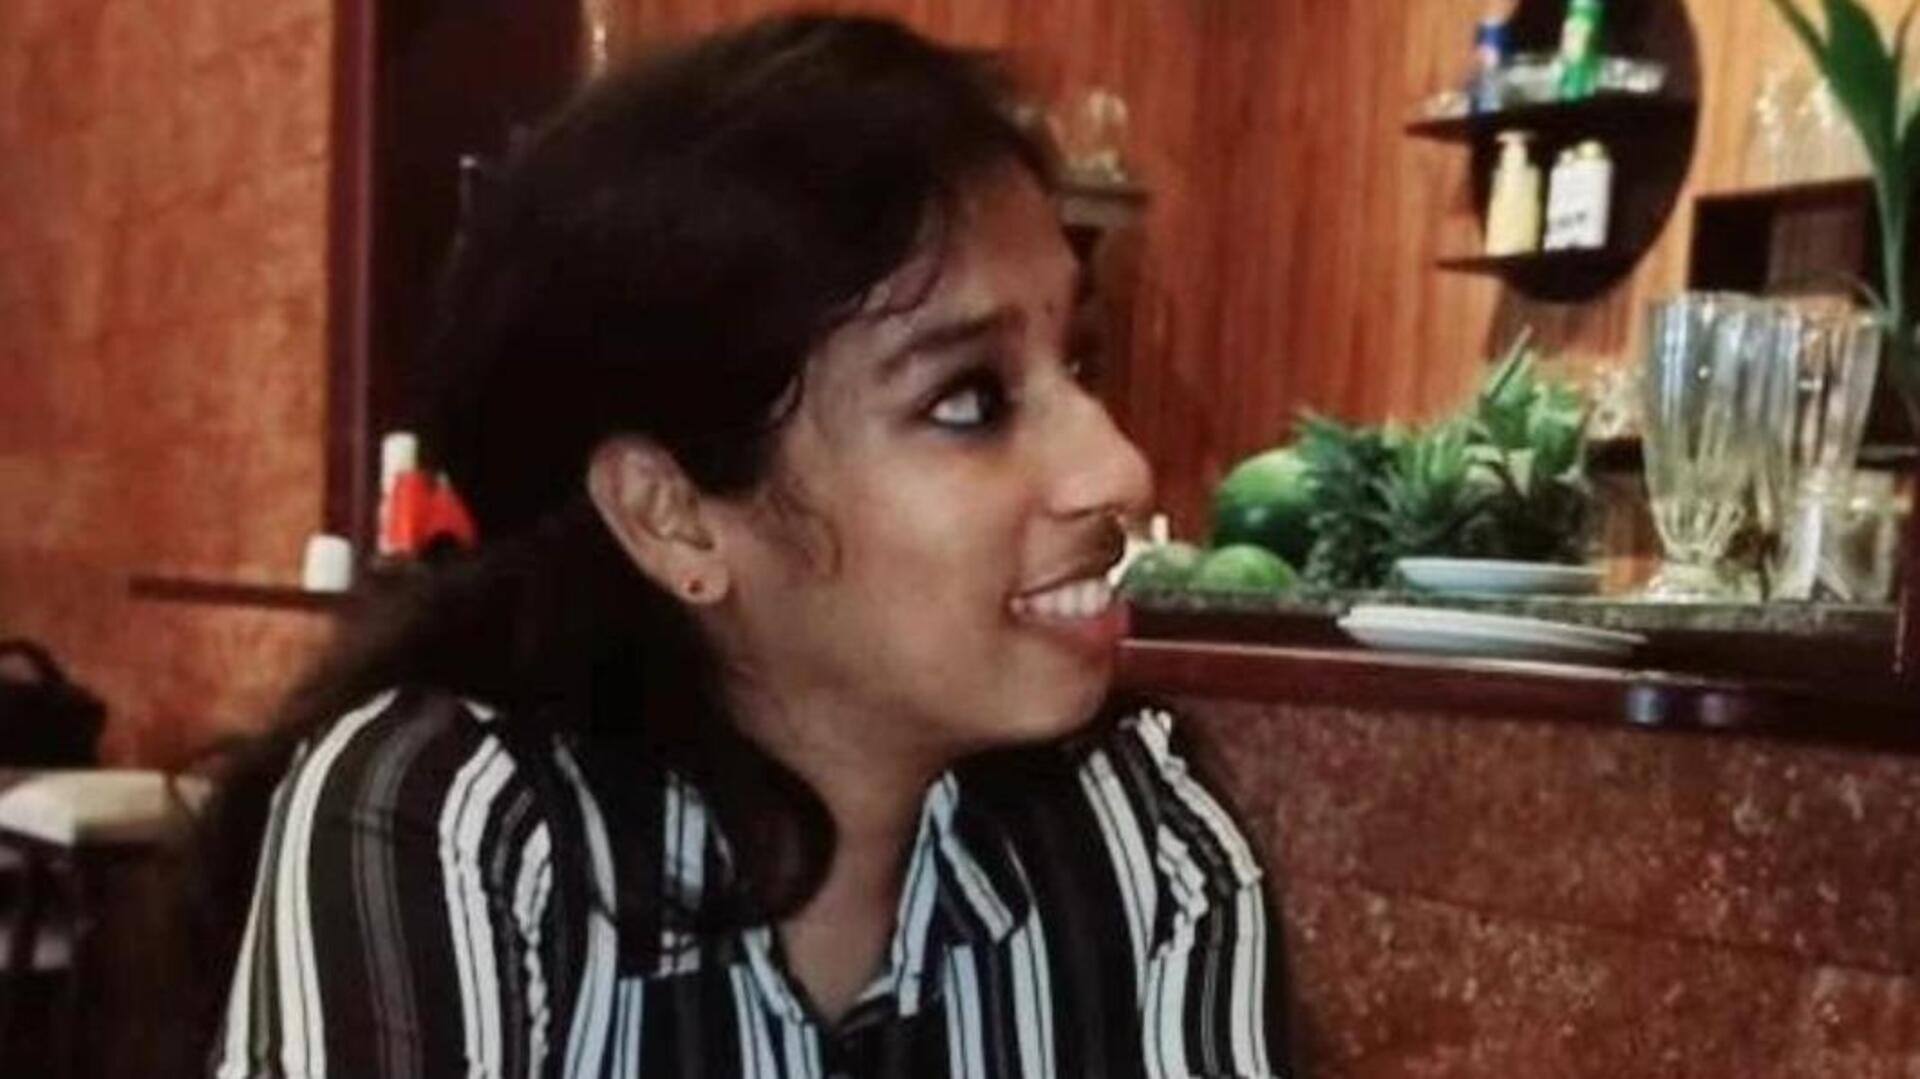 केरल: पुलिस के साथ आए मरीज ने इलाज के दौरान महिला डॉक्टर को चाकू मारा, मौत